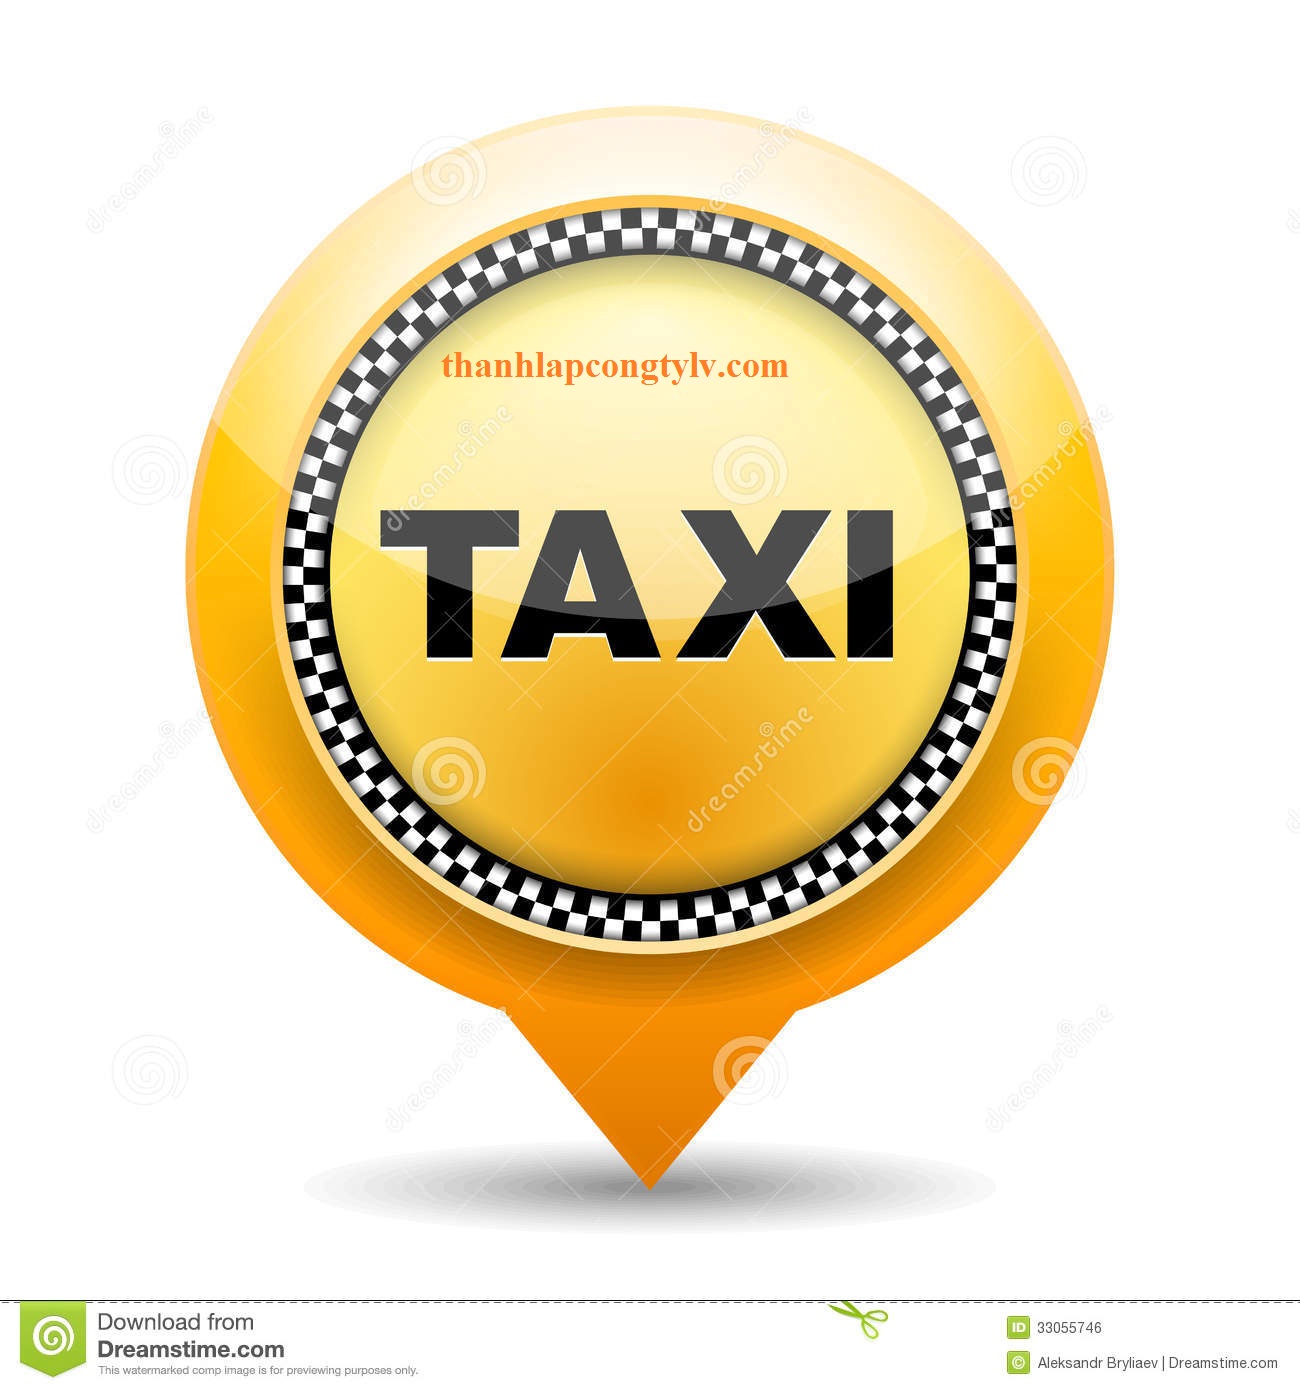 Các hãng taxi được thành lập như thế nào?